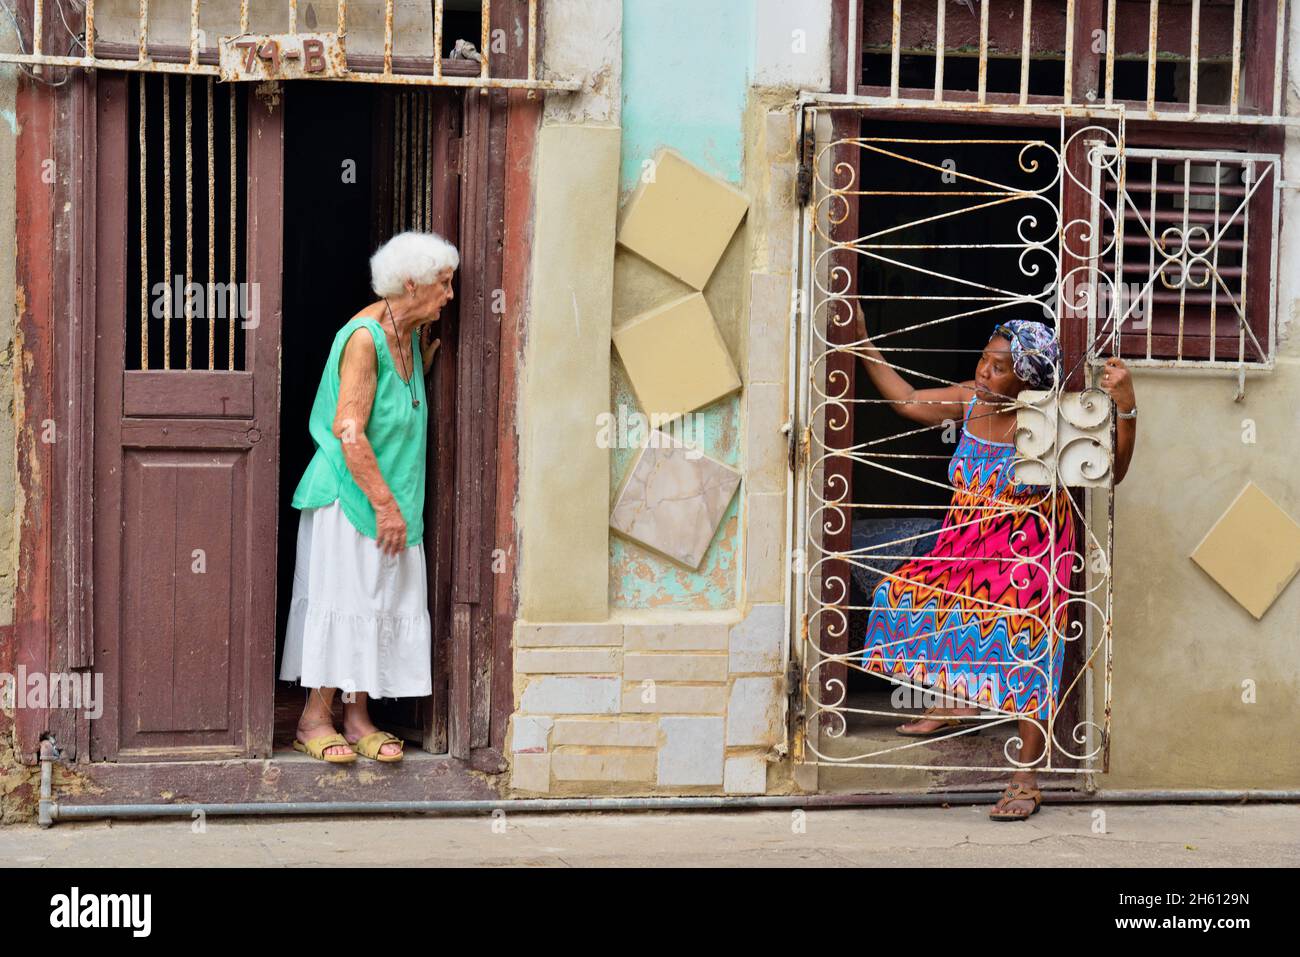 Straßenszene im Zentrum von Havanna - zwei Frauen unterhalten sich, La Habana (Havanna), Habana, Kuba Stockfoto